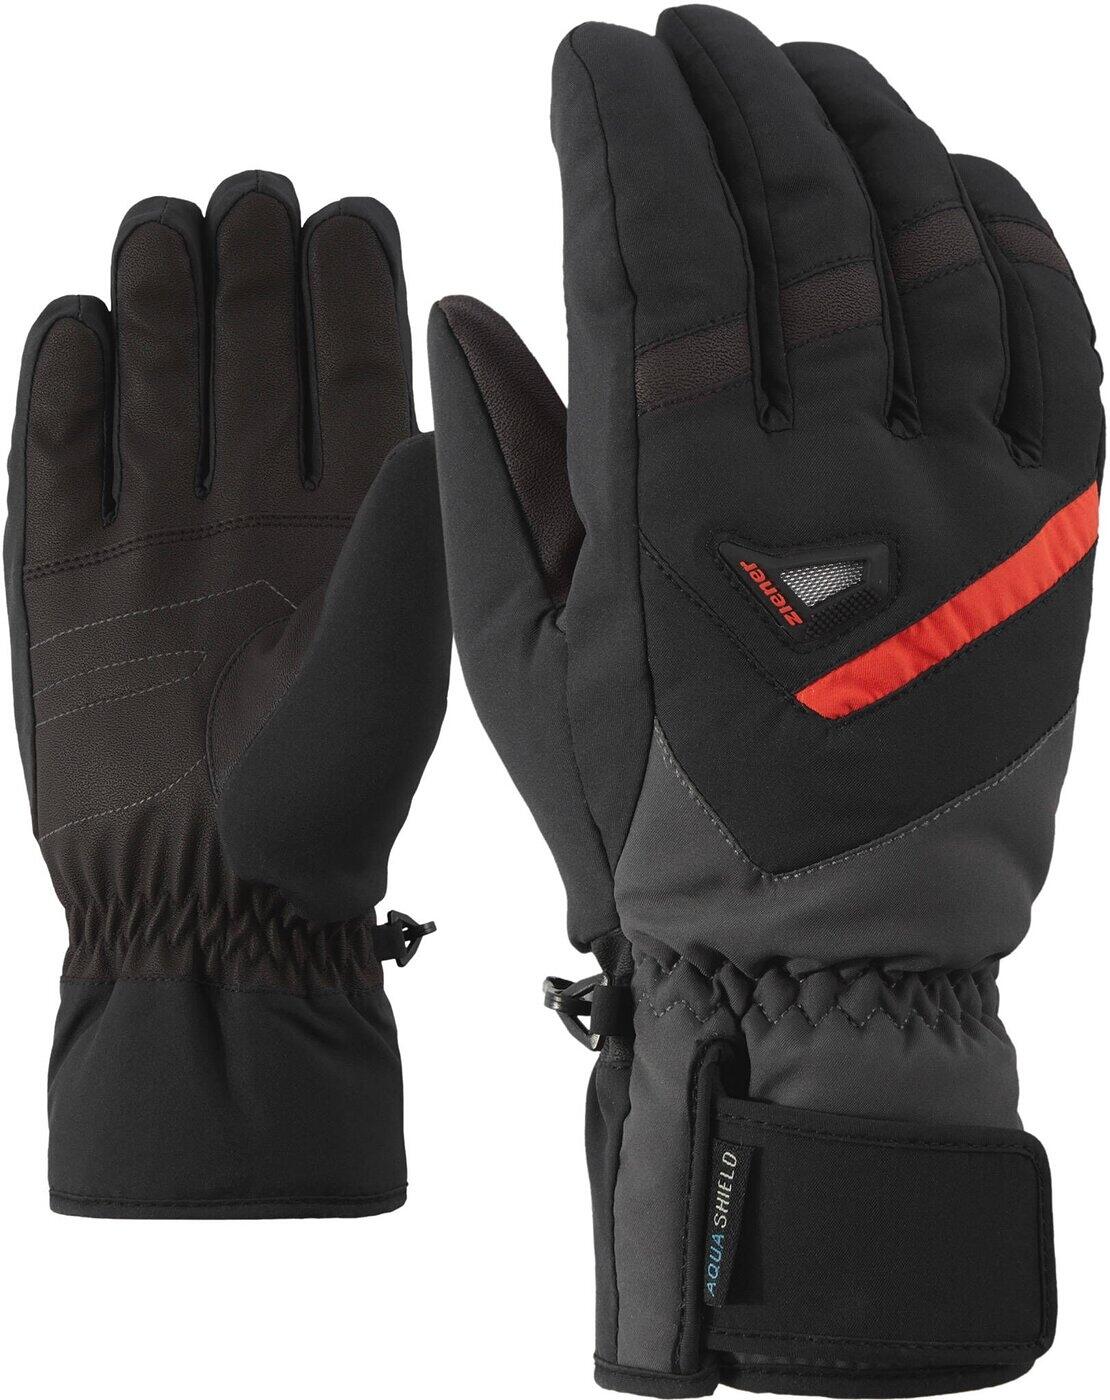 Ziener Ziener alpine 1215 glove black/graphite GARY AS(R) ski 10,5